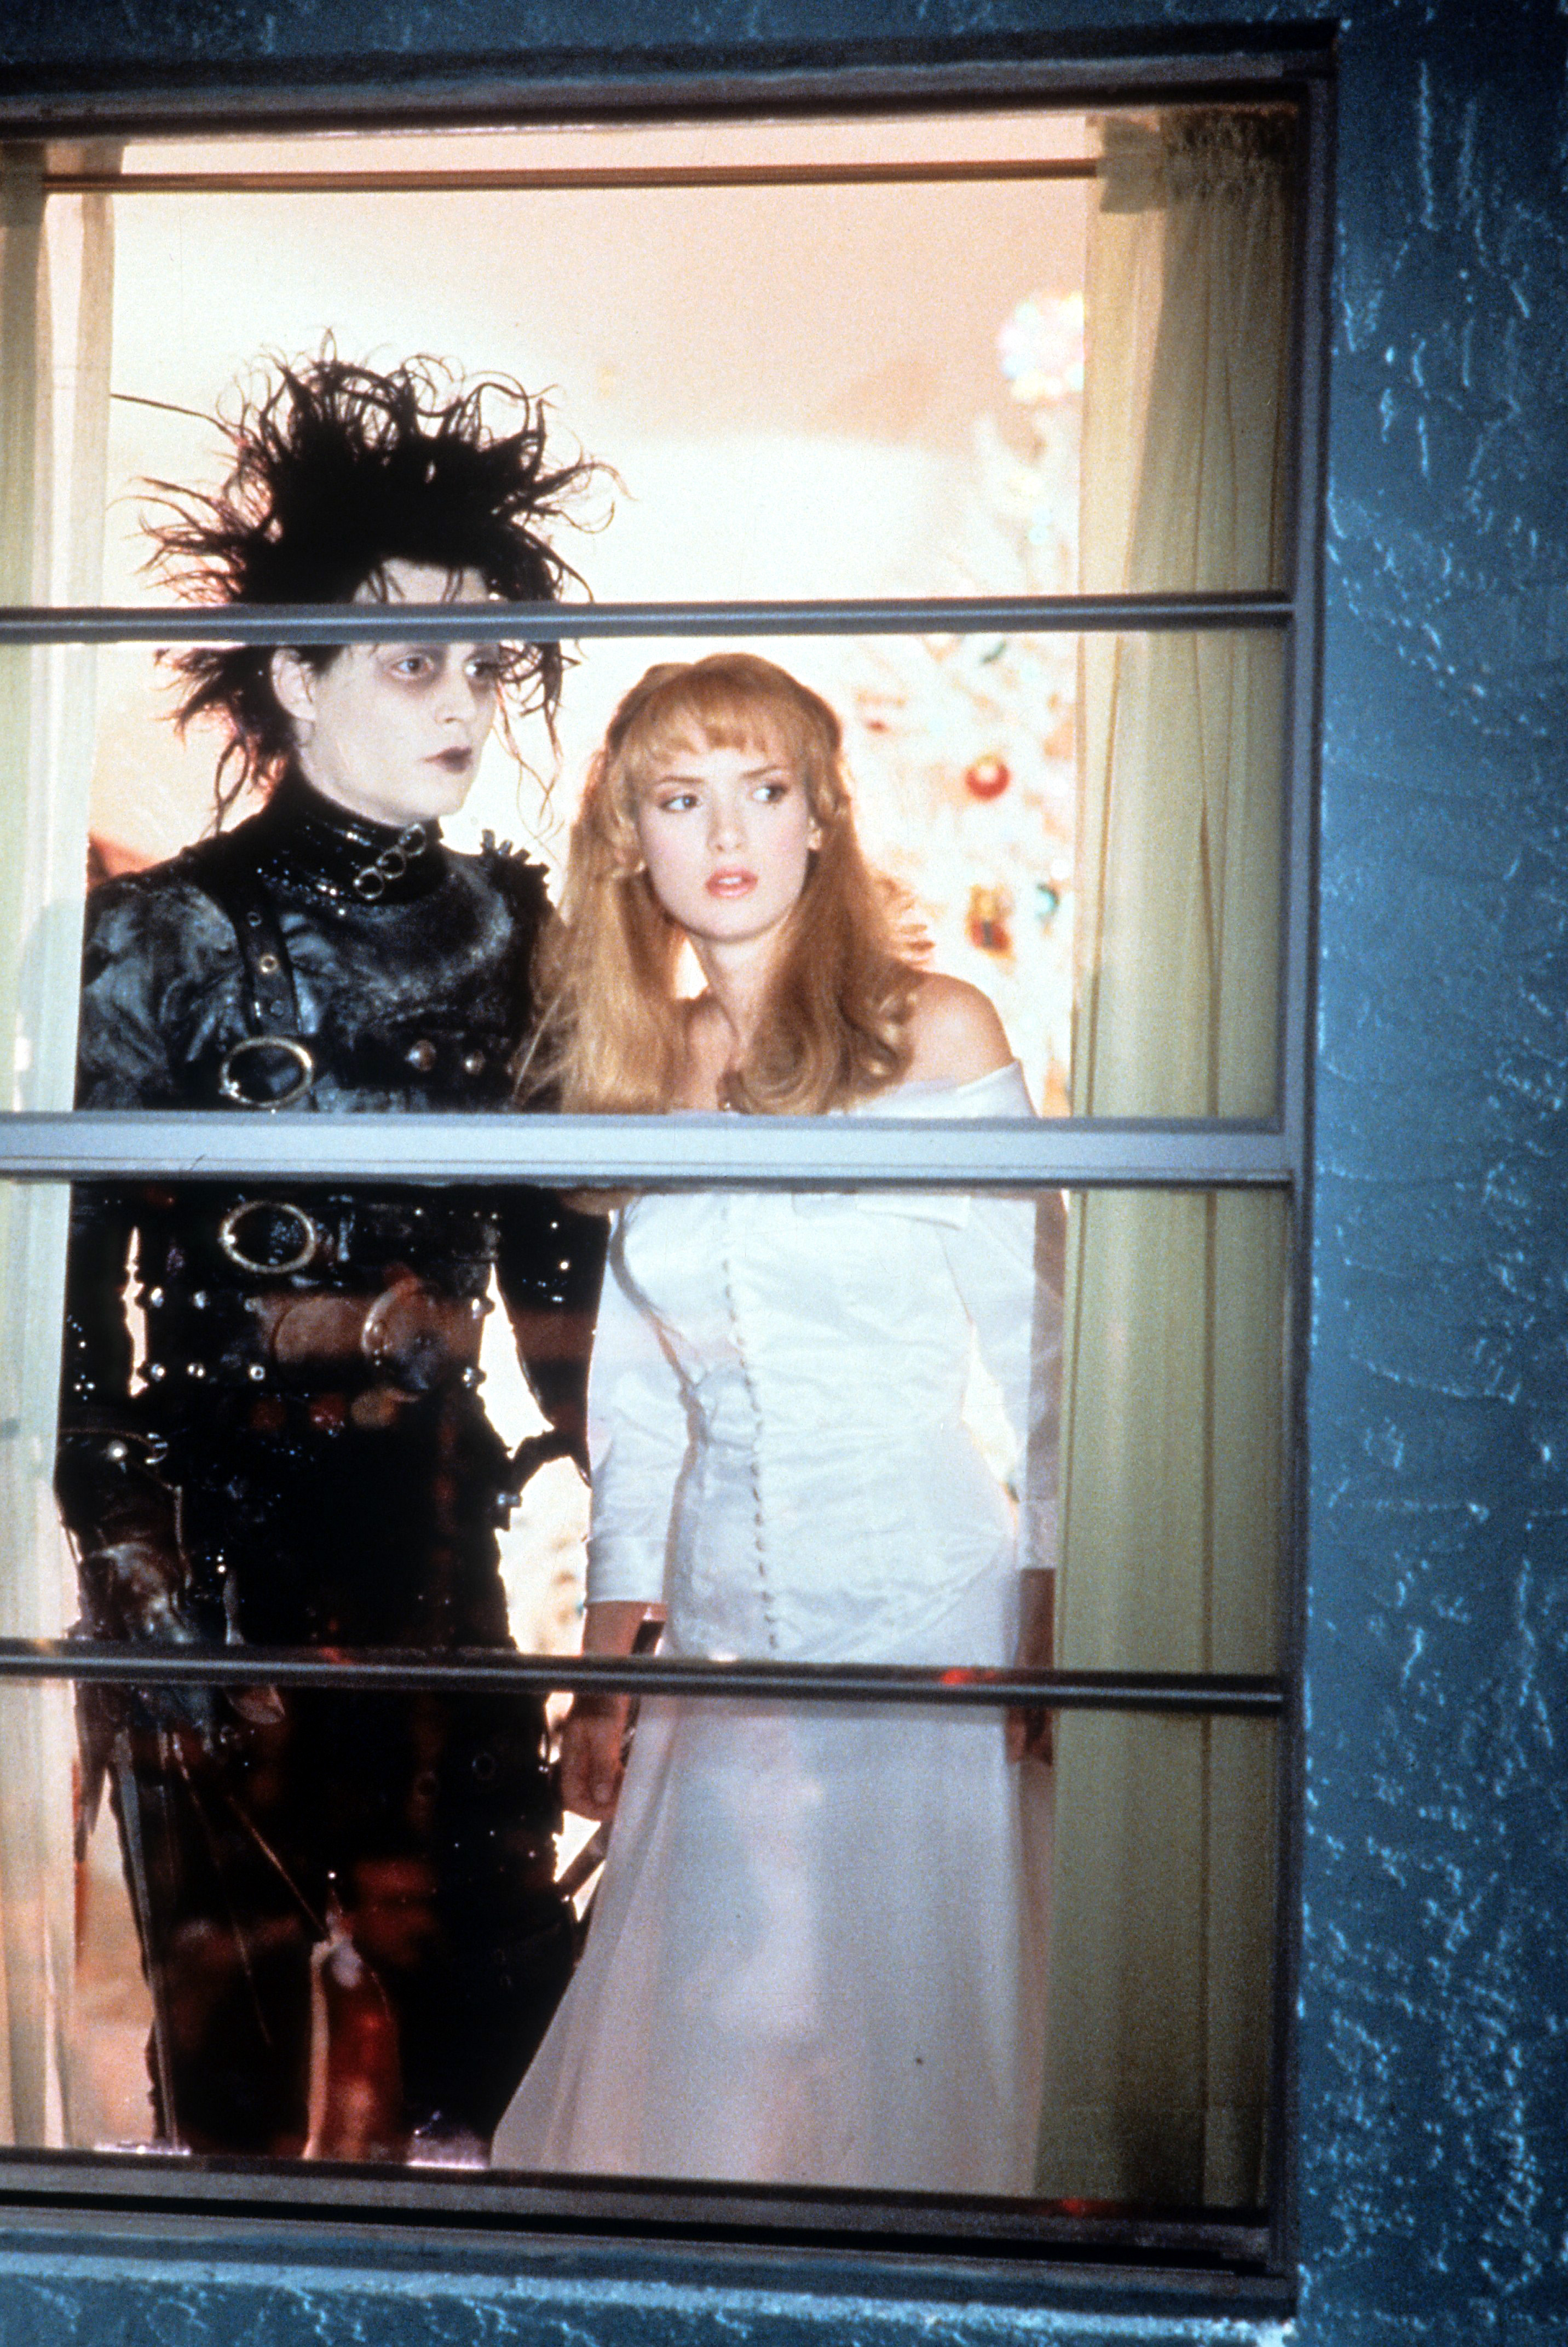 Johnny Depp et l'actrice Winona Ryder regardant par la fenêtre dans une scène du film "Edward Scissorhands", le 1er janvier 1990 | Source : Getty Images